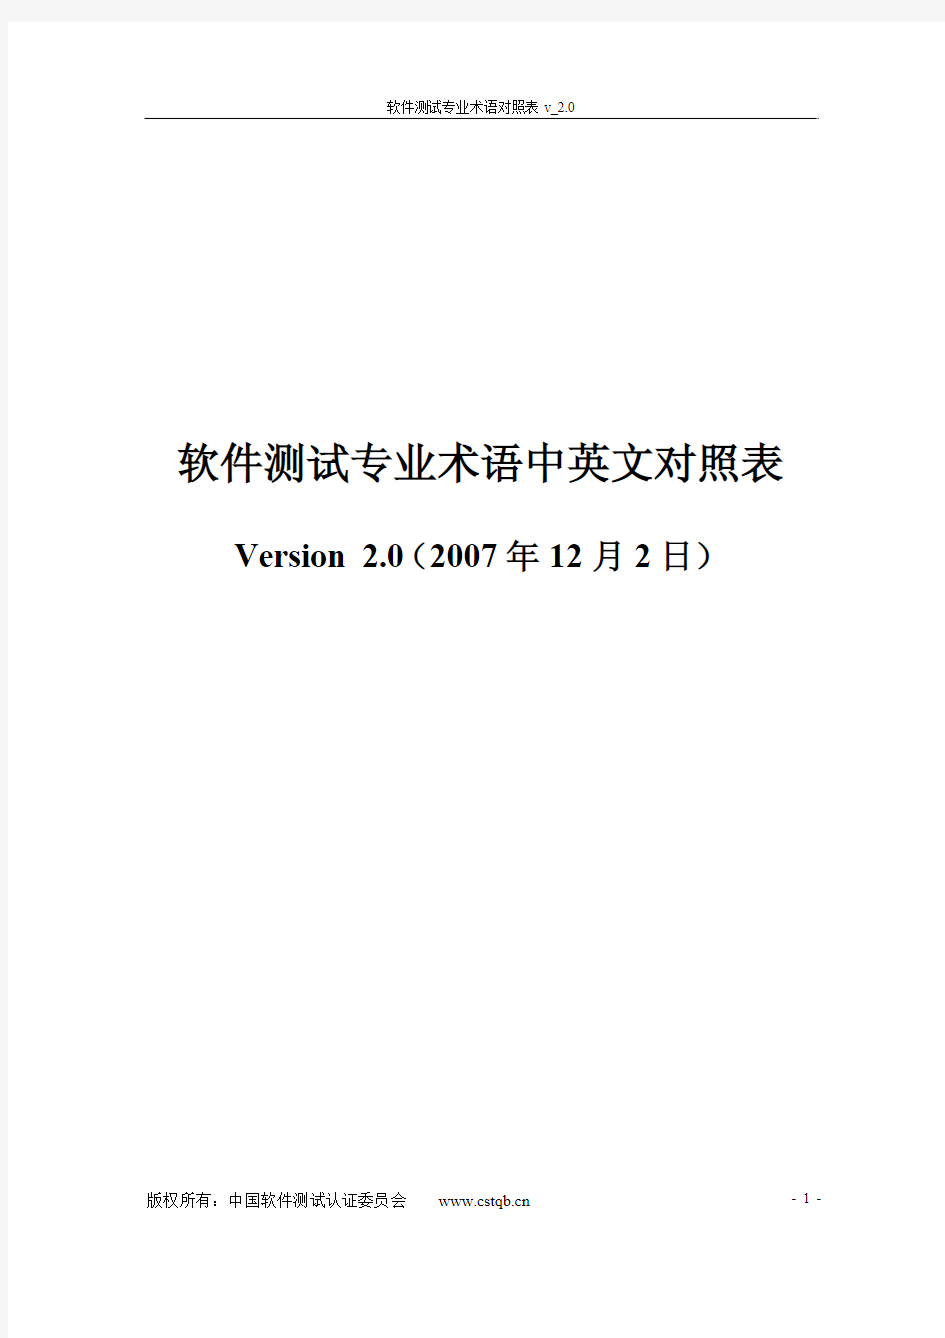 中英文术语对照表v_2.0